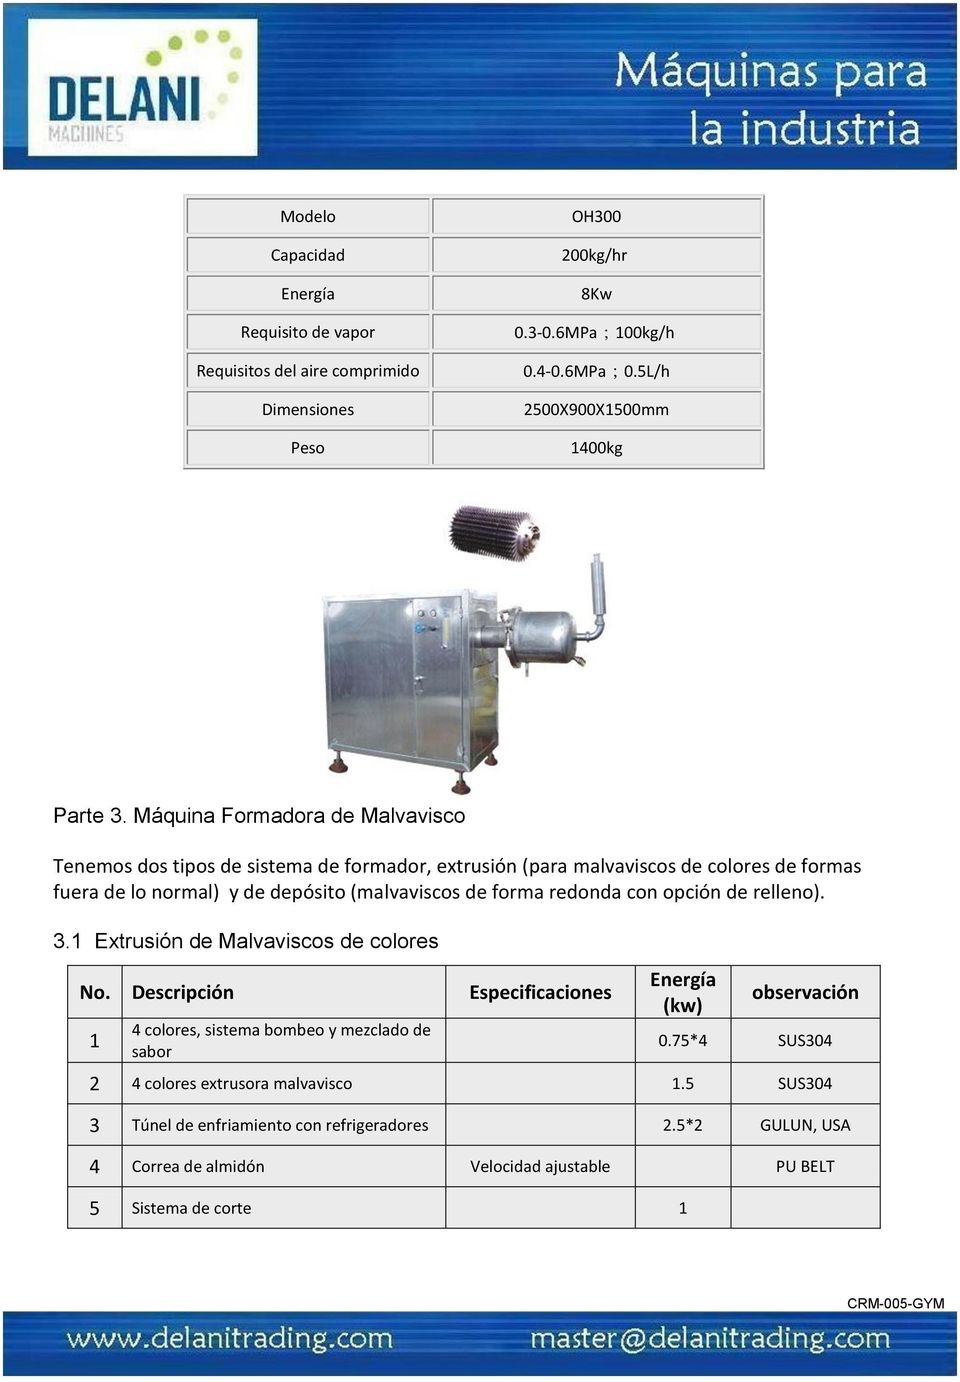 Máquina Formadora de Malvavisco Tenemos dos tipos de sistema de formador, extrusión (para malvaviscos de colores de formas fuera de lo normal) y de depósito (malvaviscos de